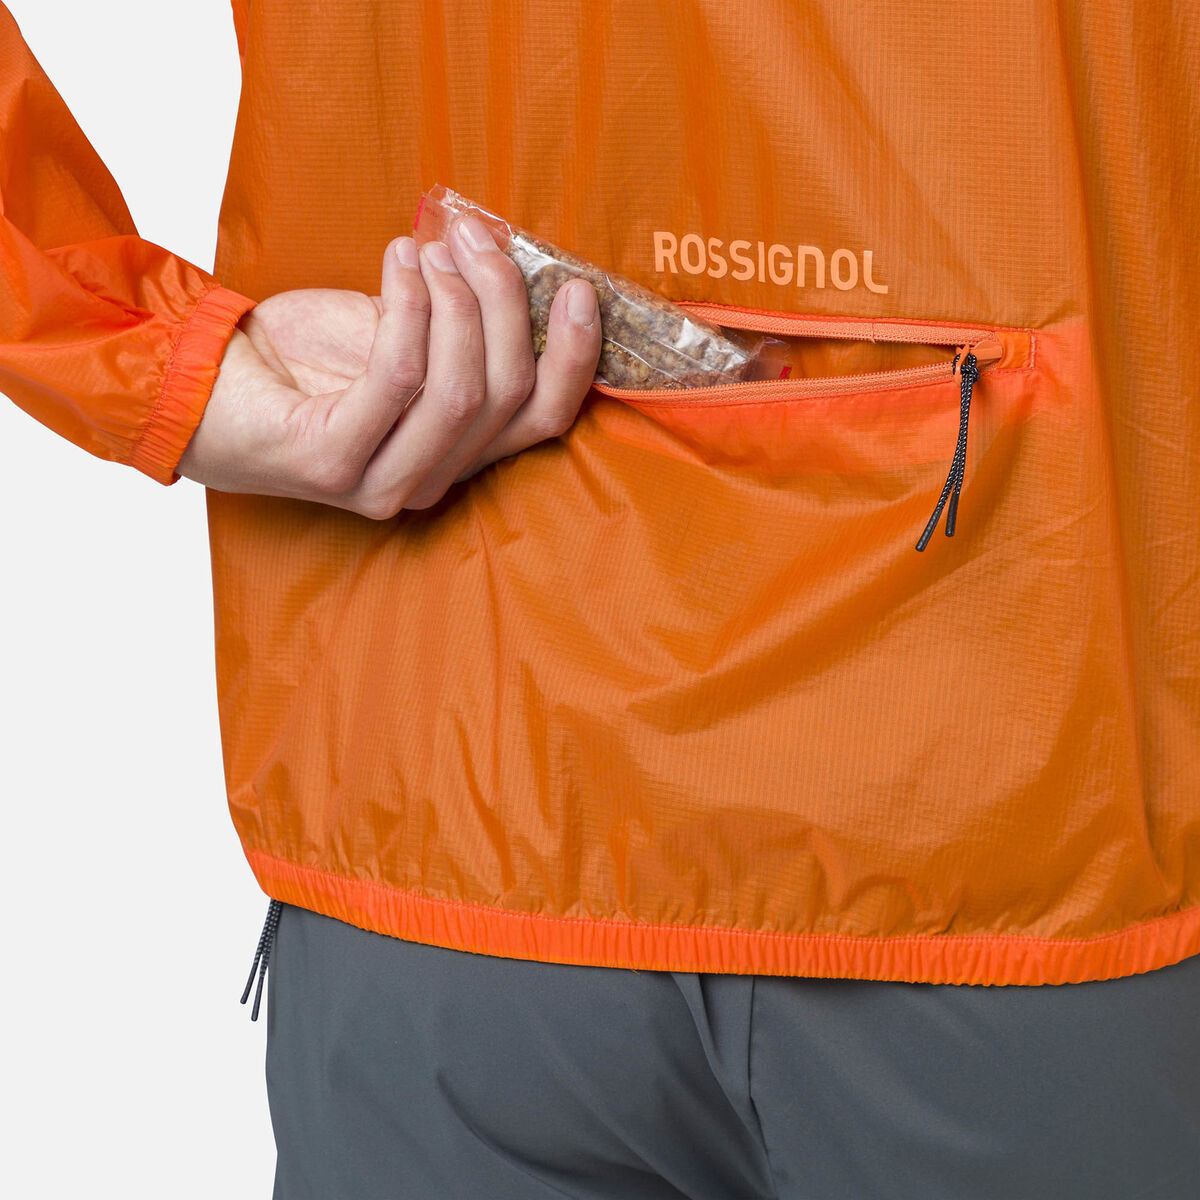 Rossignol Men's Ultralight Packable Jacket orange